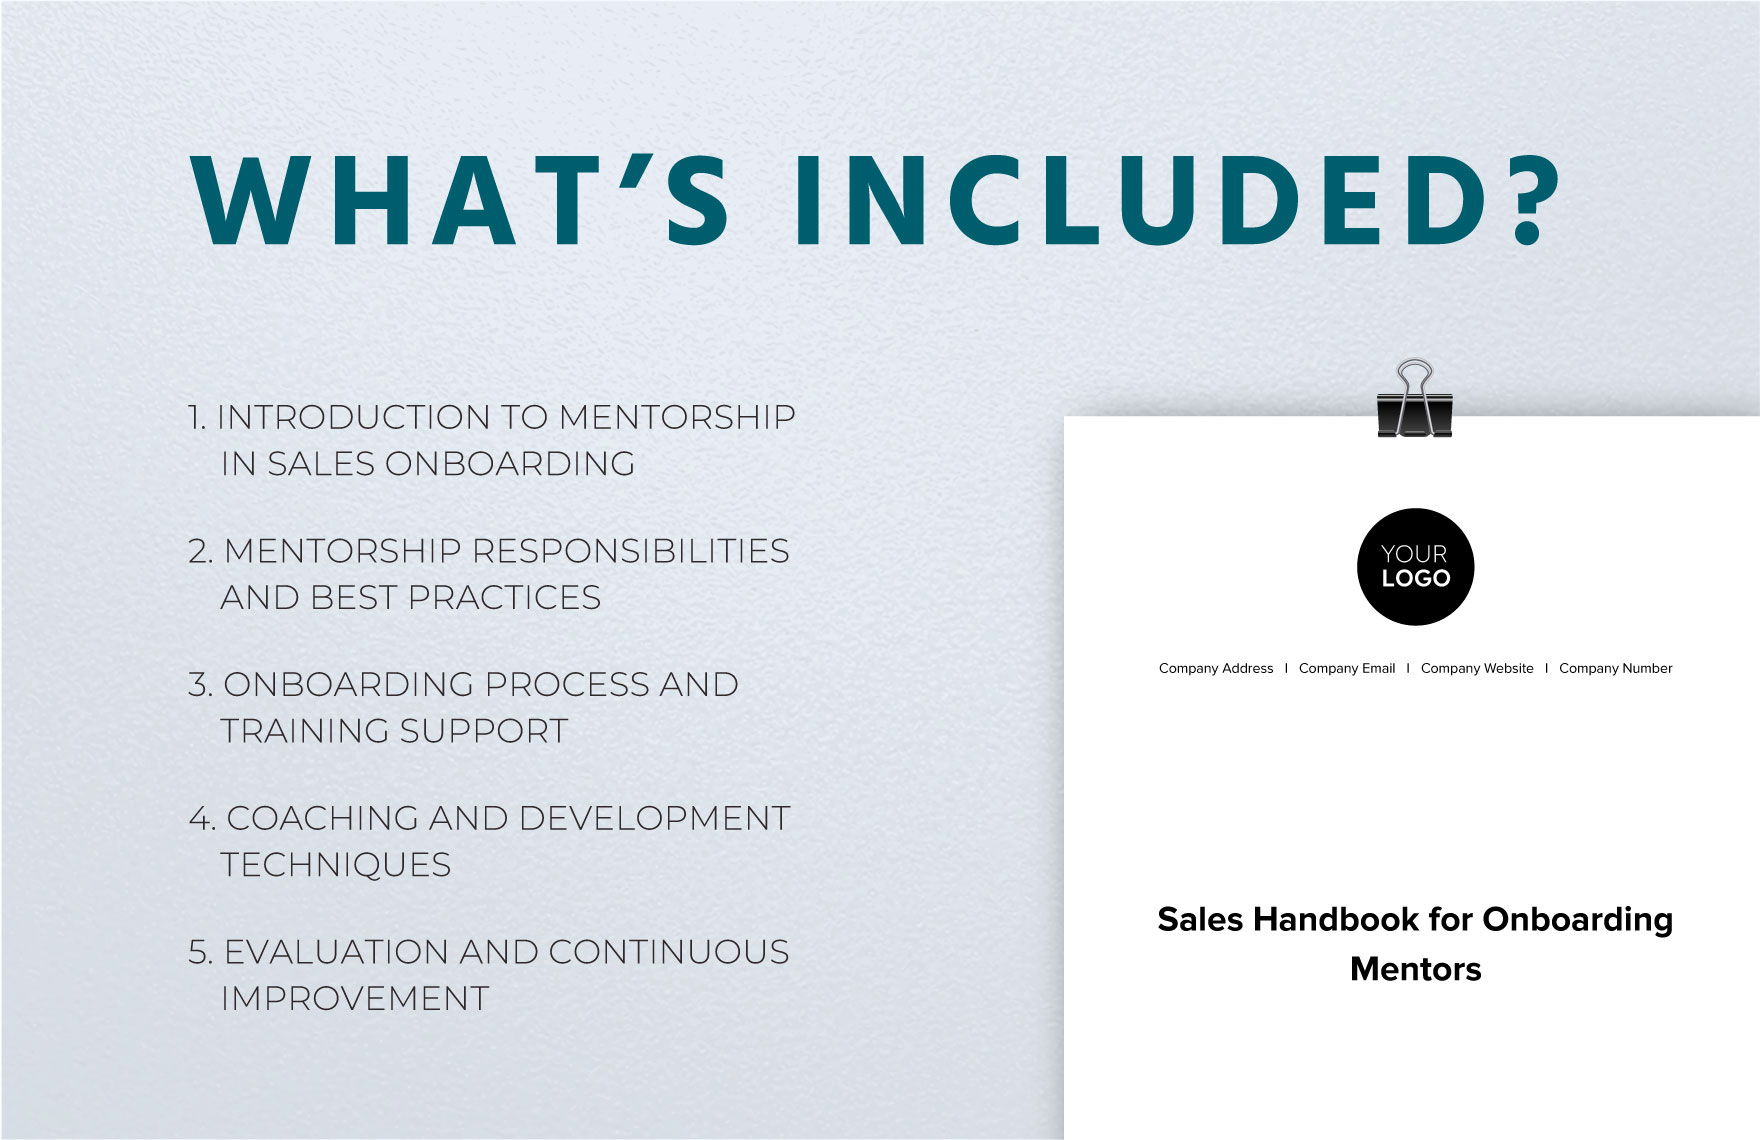 Sales Handbook for Onboarding Mentors Template